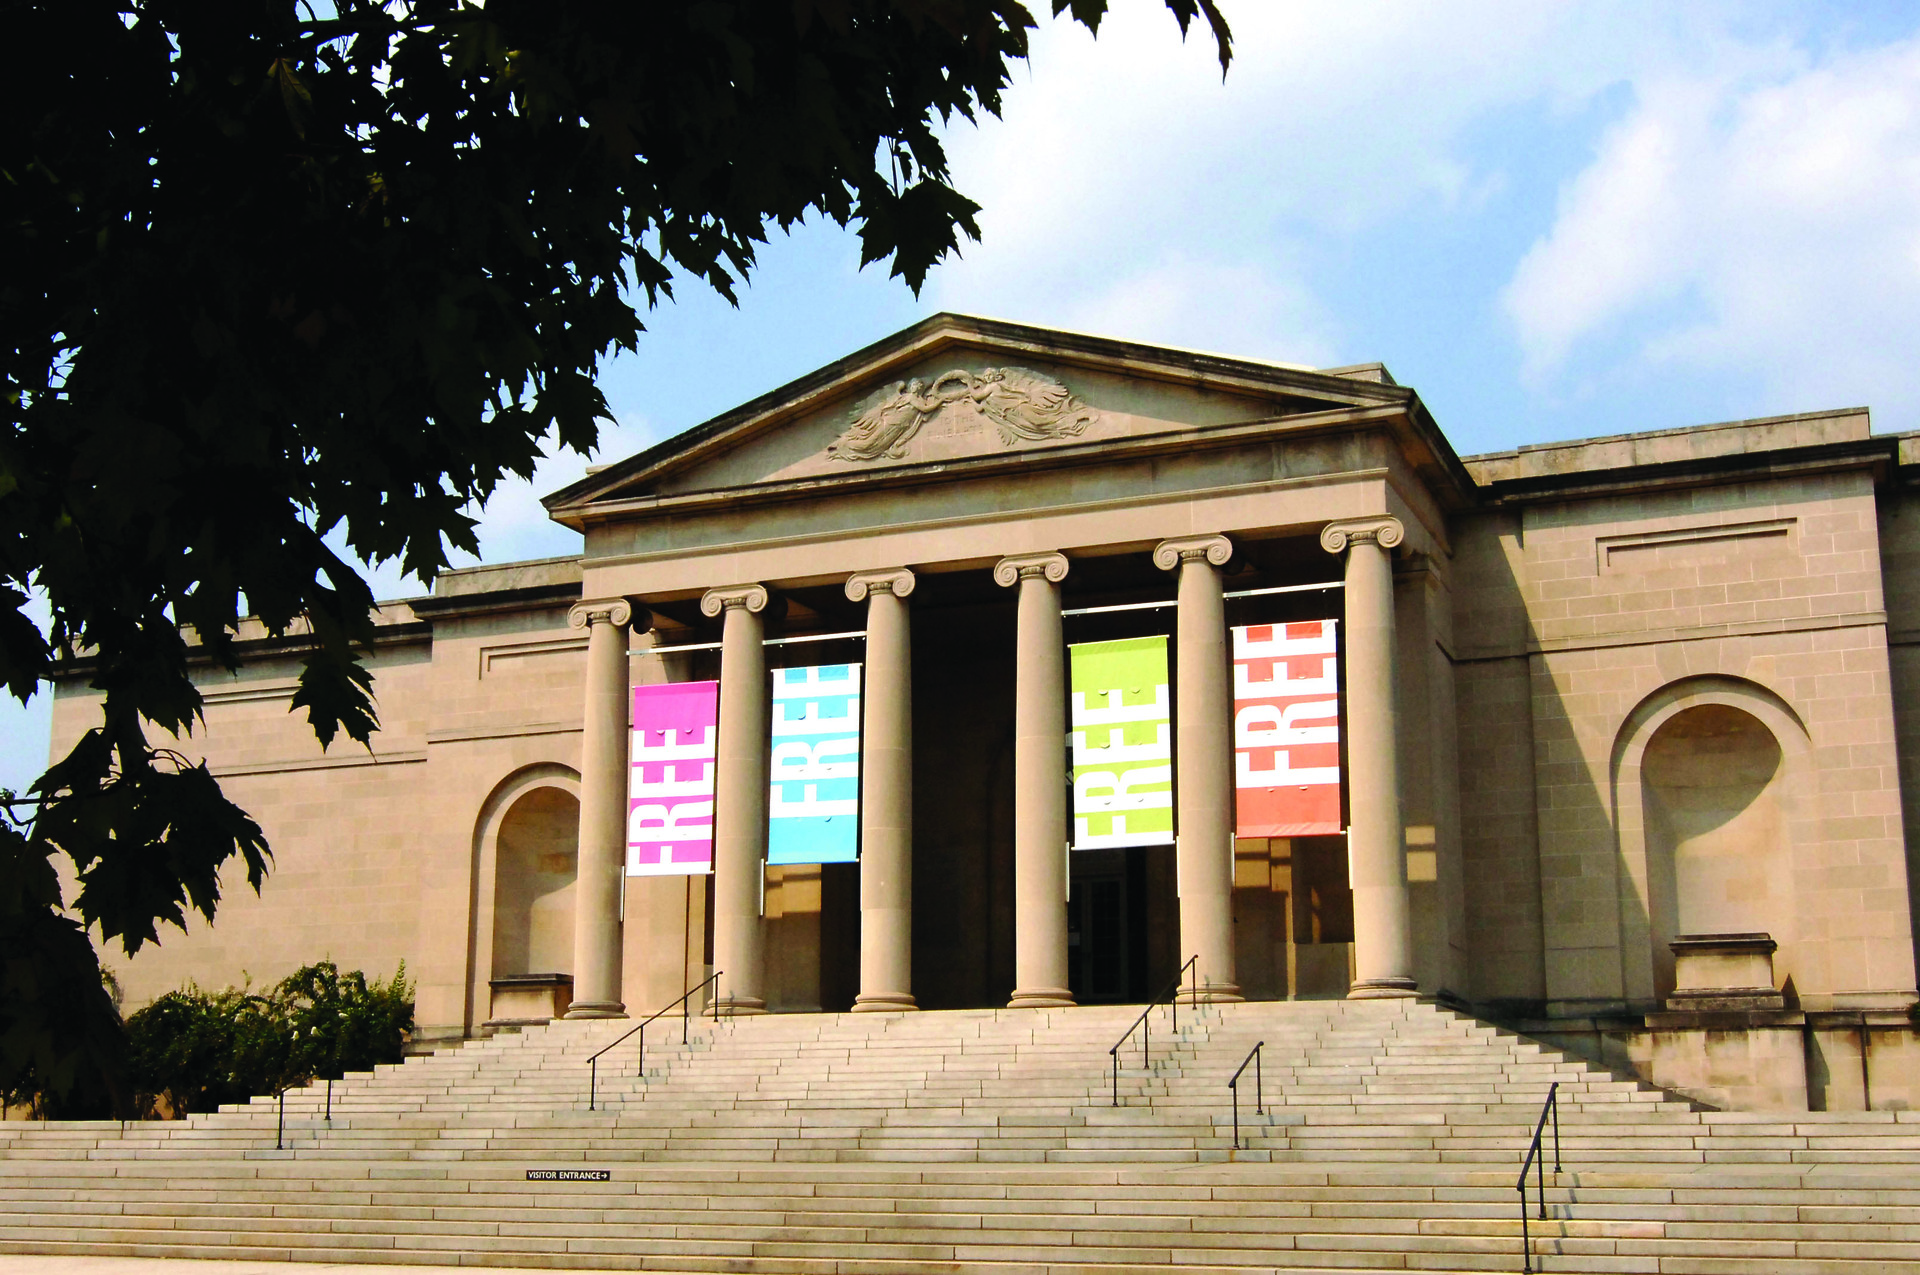 Fachada do Baltimore Museum of Art, que também serve de cenário na série ‘House of Cards’